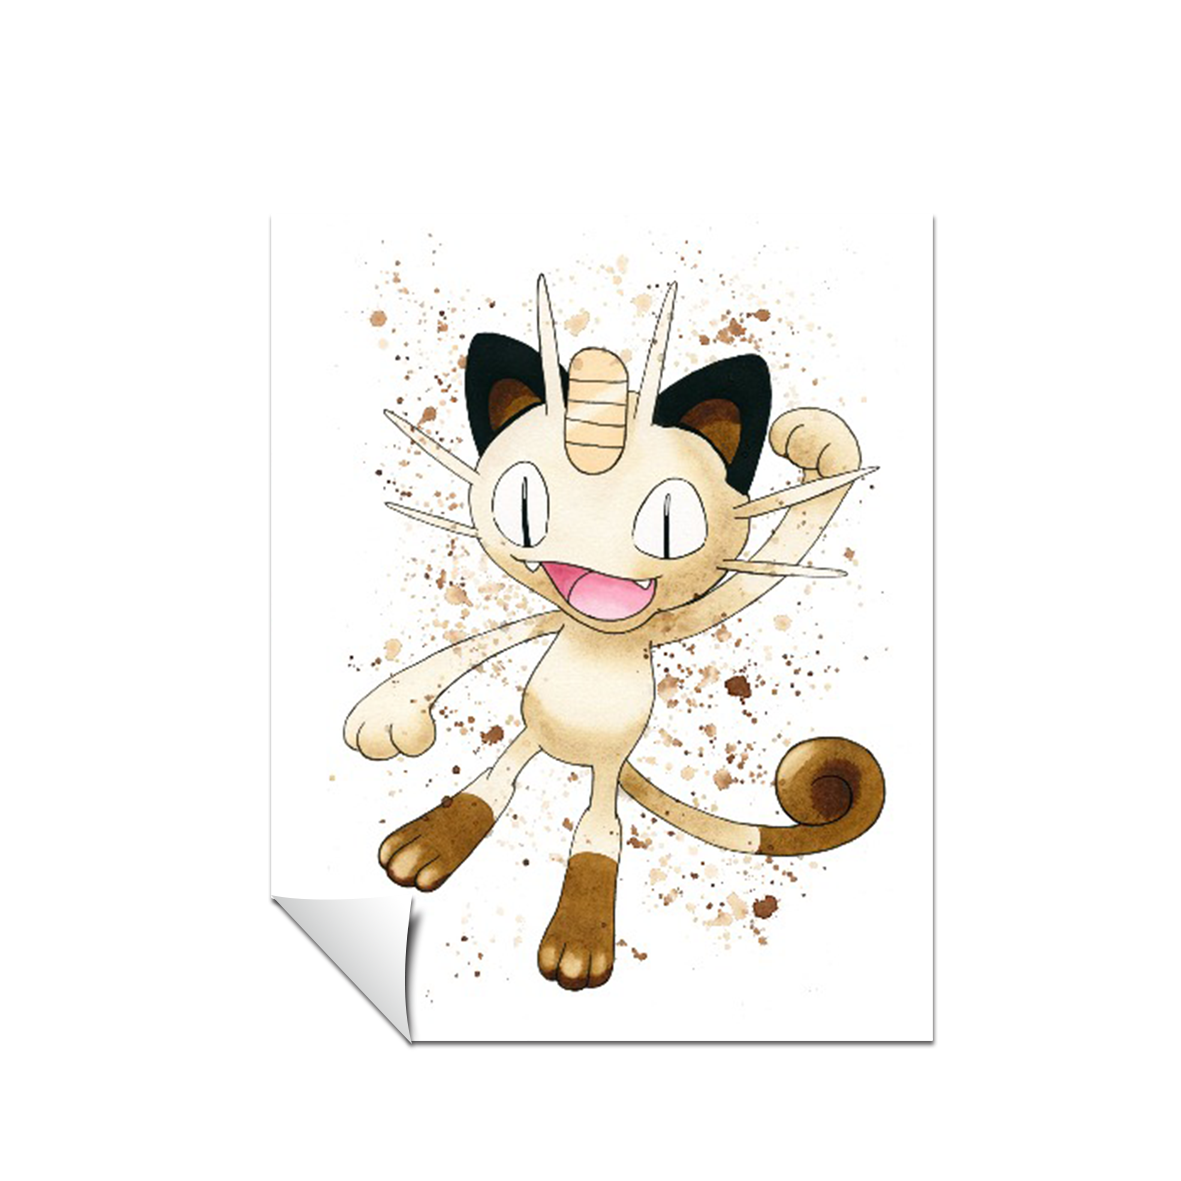 Pokemon arte de acuarela Meowth 167